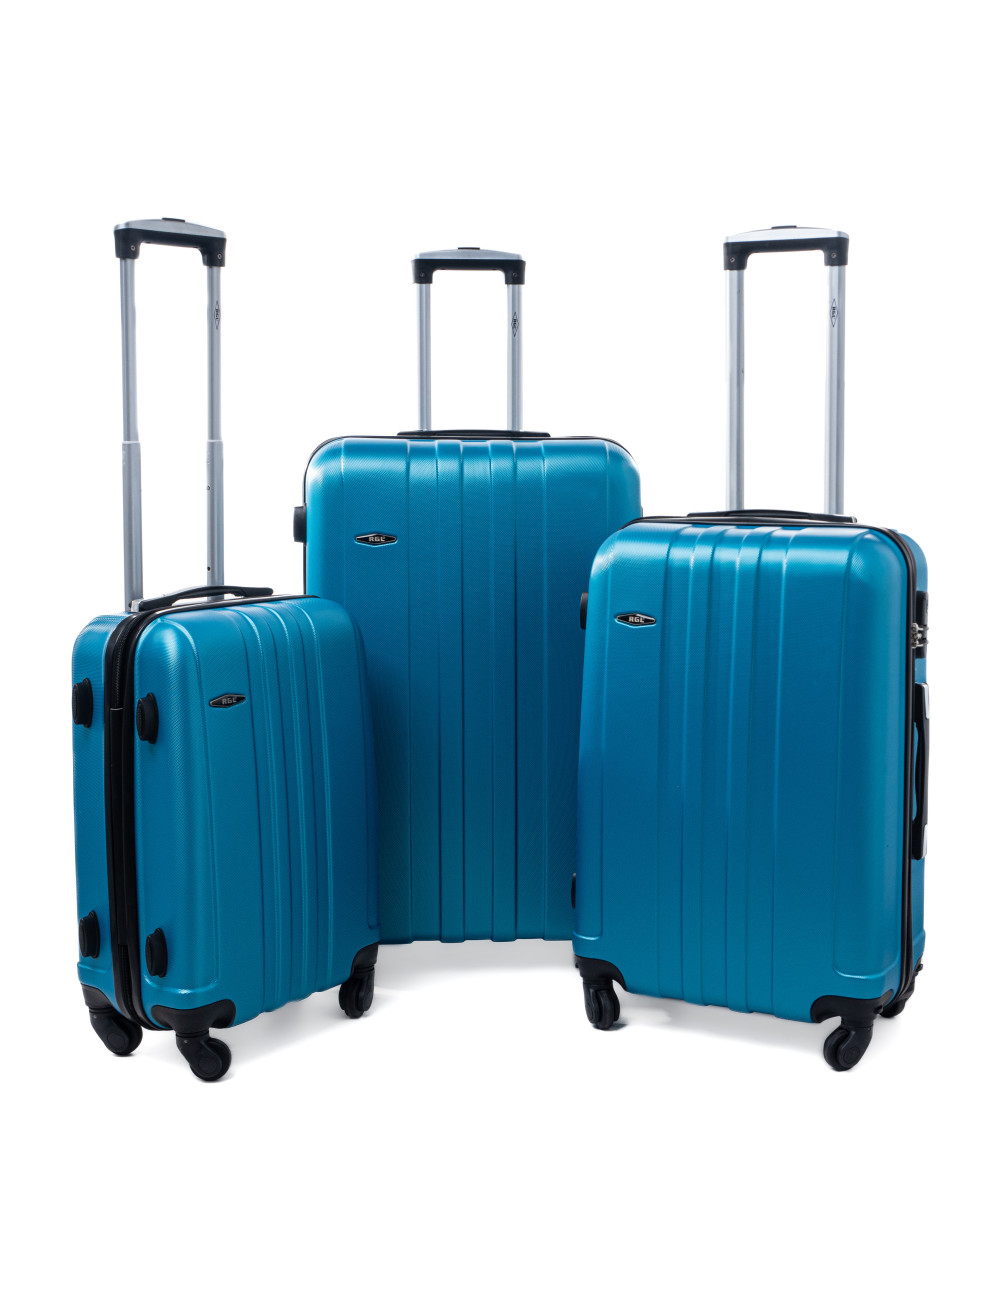 Zestaw walizek podróżnych 3w1 XXL, XL, L 740 RGL - niebieski metaliczny